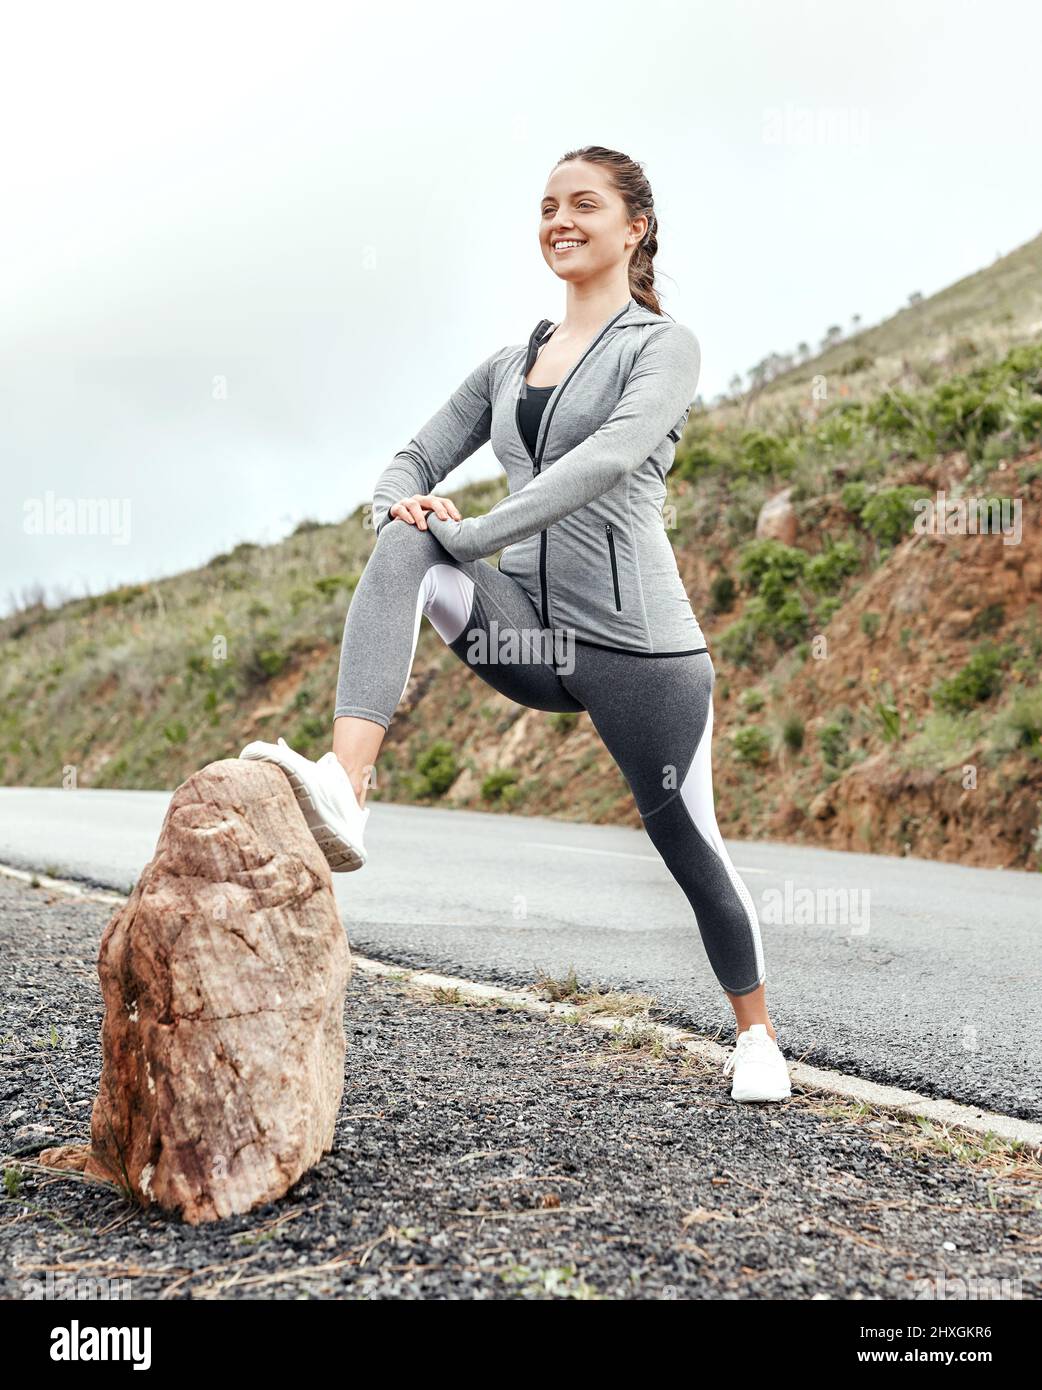 Laufen mit Muskeln, die nicht richtig vorbereitet sind, kann zu einer Belastung führen. Aufnahme einer sportlichen jungen Frau, die ihre Beine während des Trainings im Freien streckt. Stockfoto